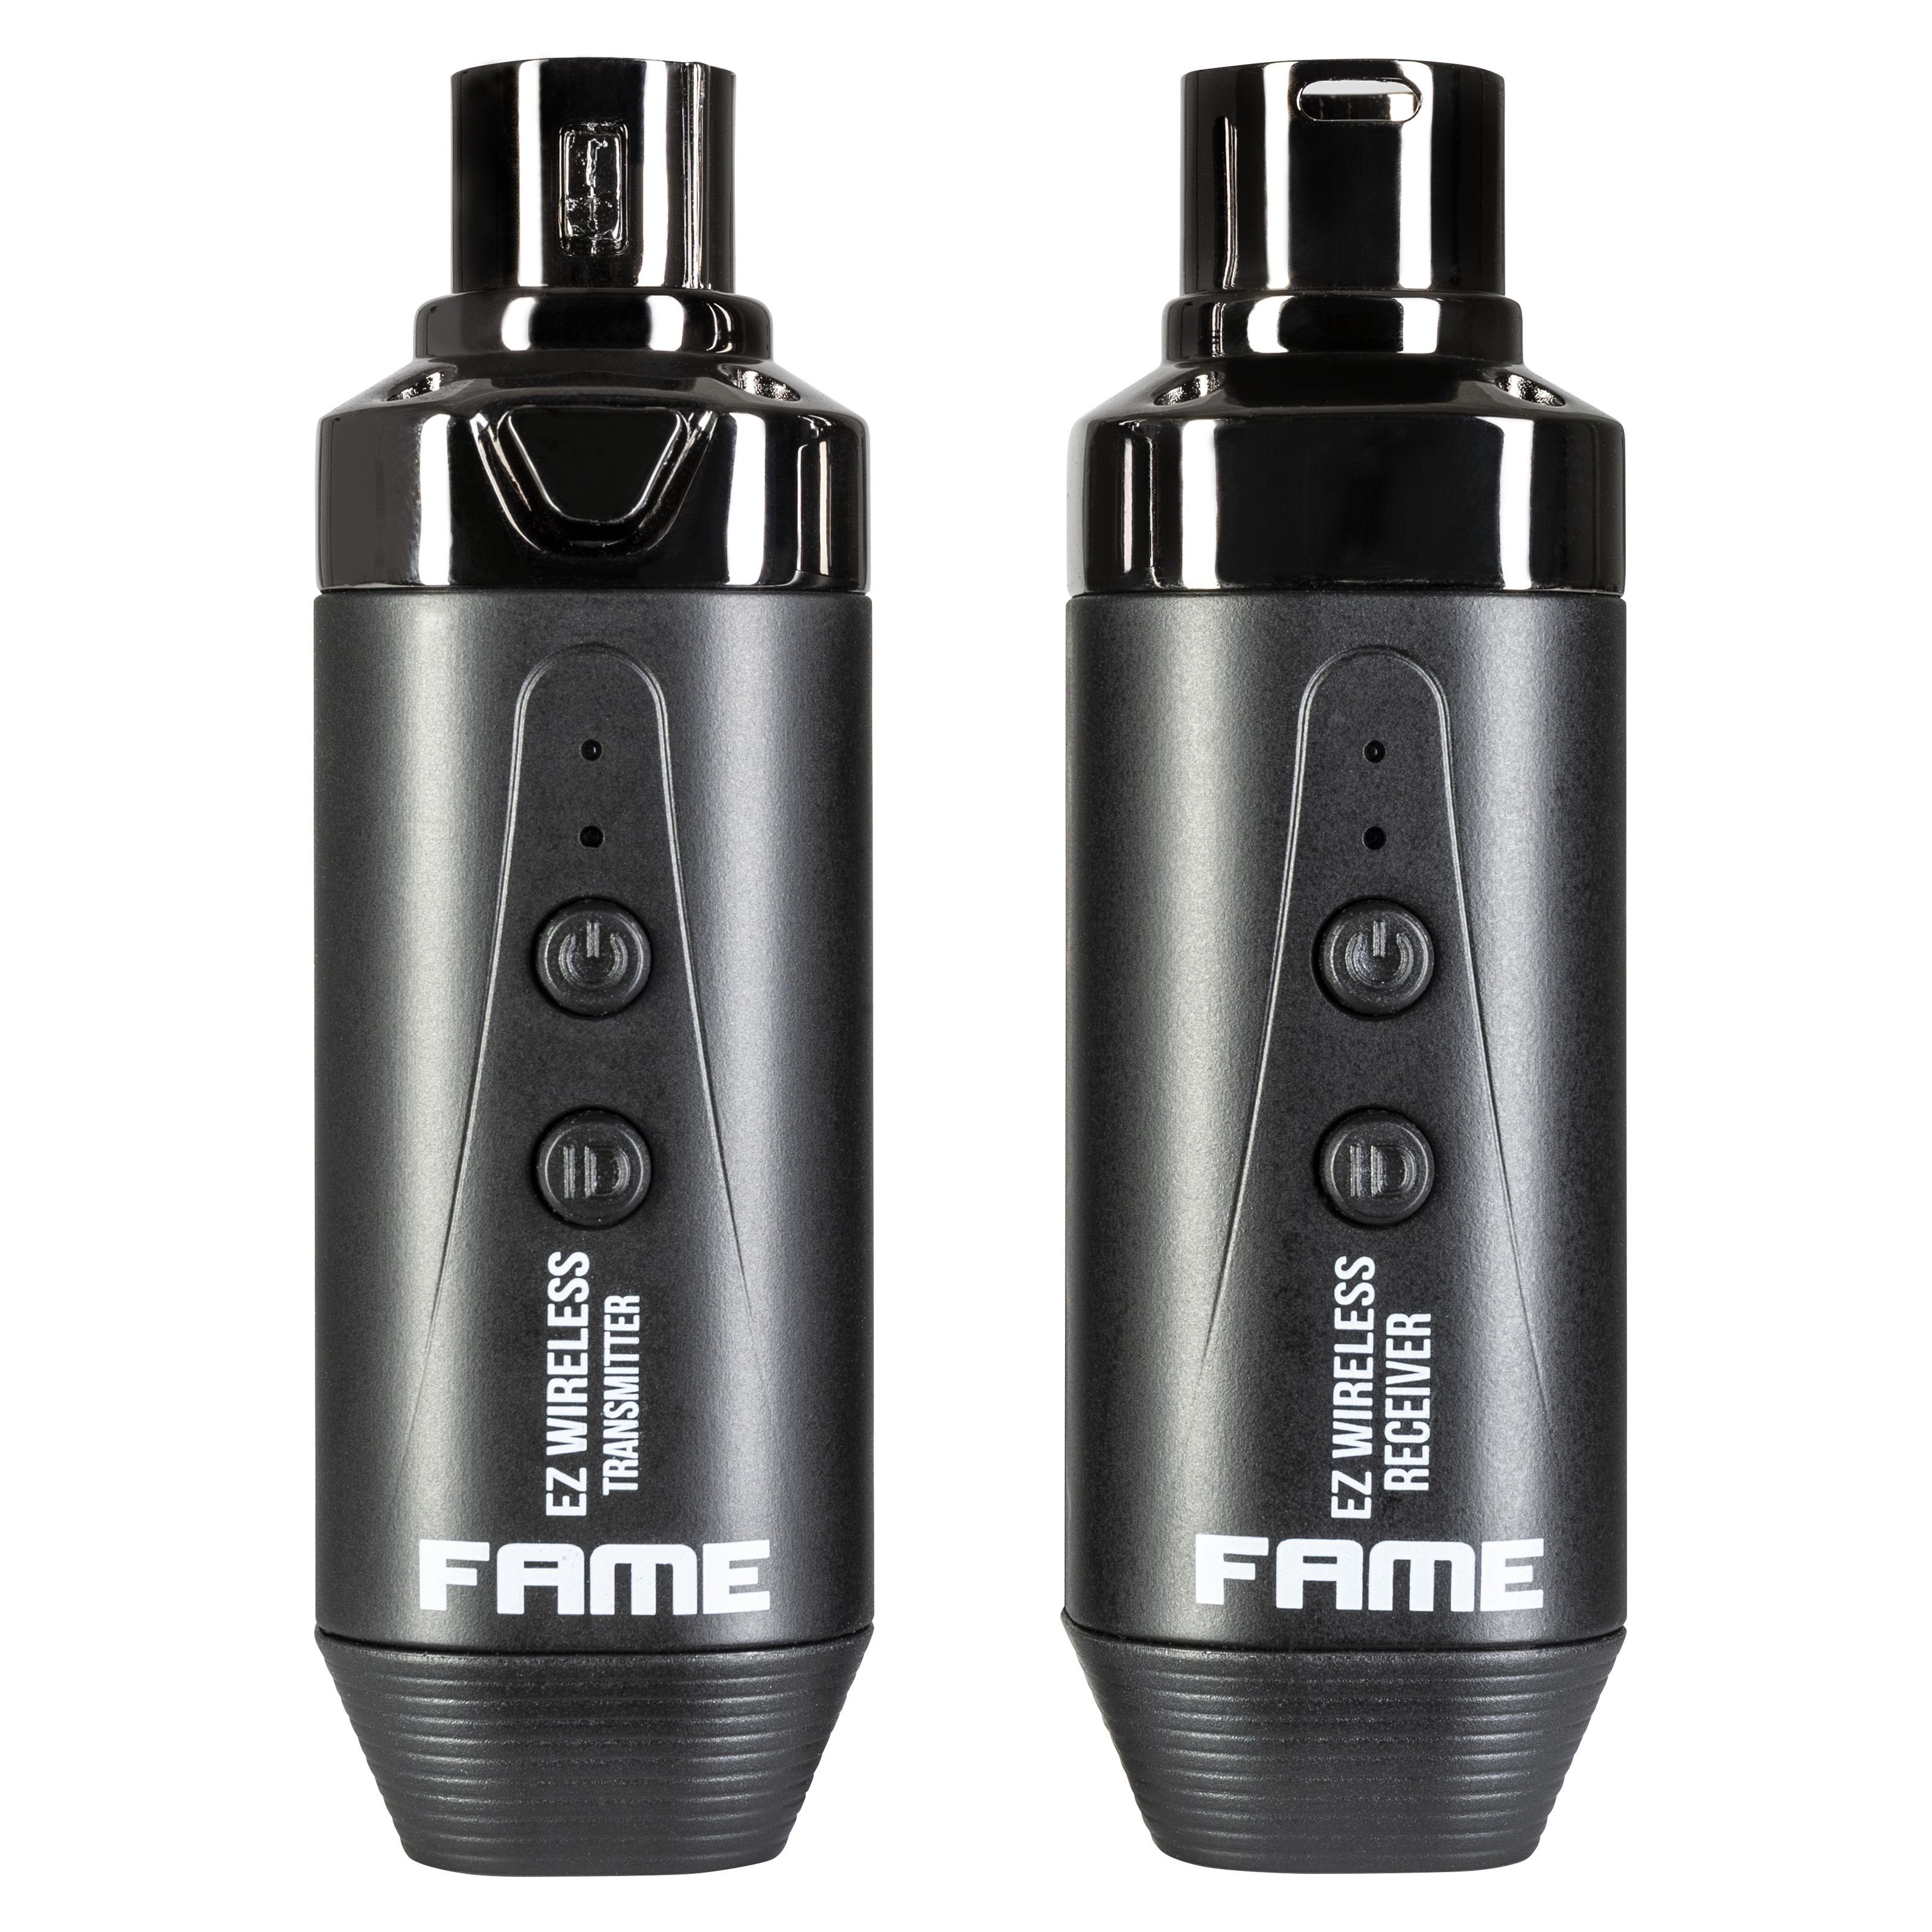 Fame Audio Mikrofon (Fame EZ Wireless Wiederaufladbares XLR-Aufstecksender und -Empfänger System für Mikrofone, Leistungsstarke Funktechnologie, hochwertige Audioqualität, Reichweite bis zu 35 Meter), Wireless XLR-Aufstecksender, Wireless XLR-Empfänger, Wiederaufladbare